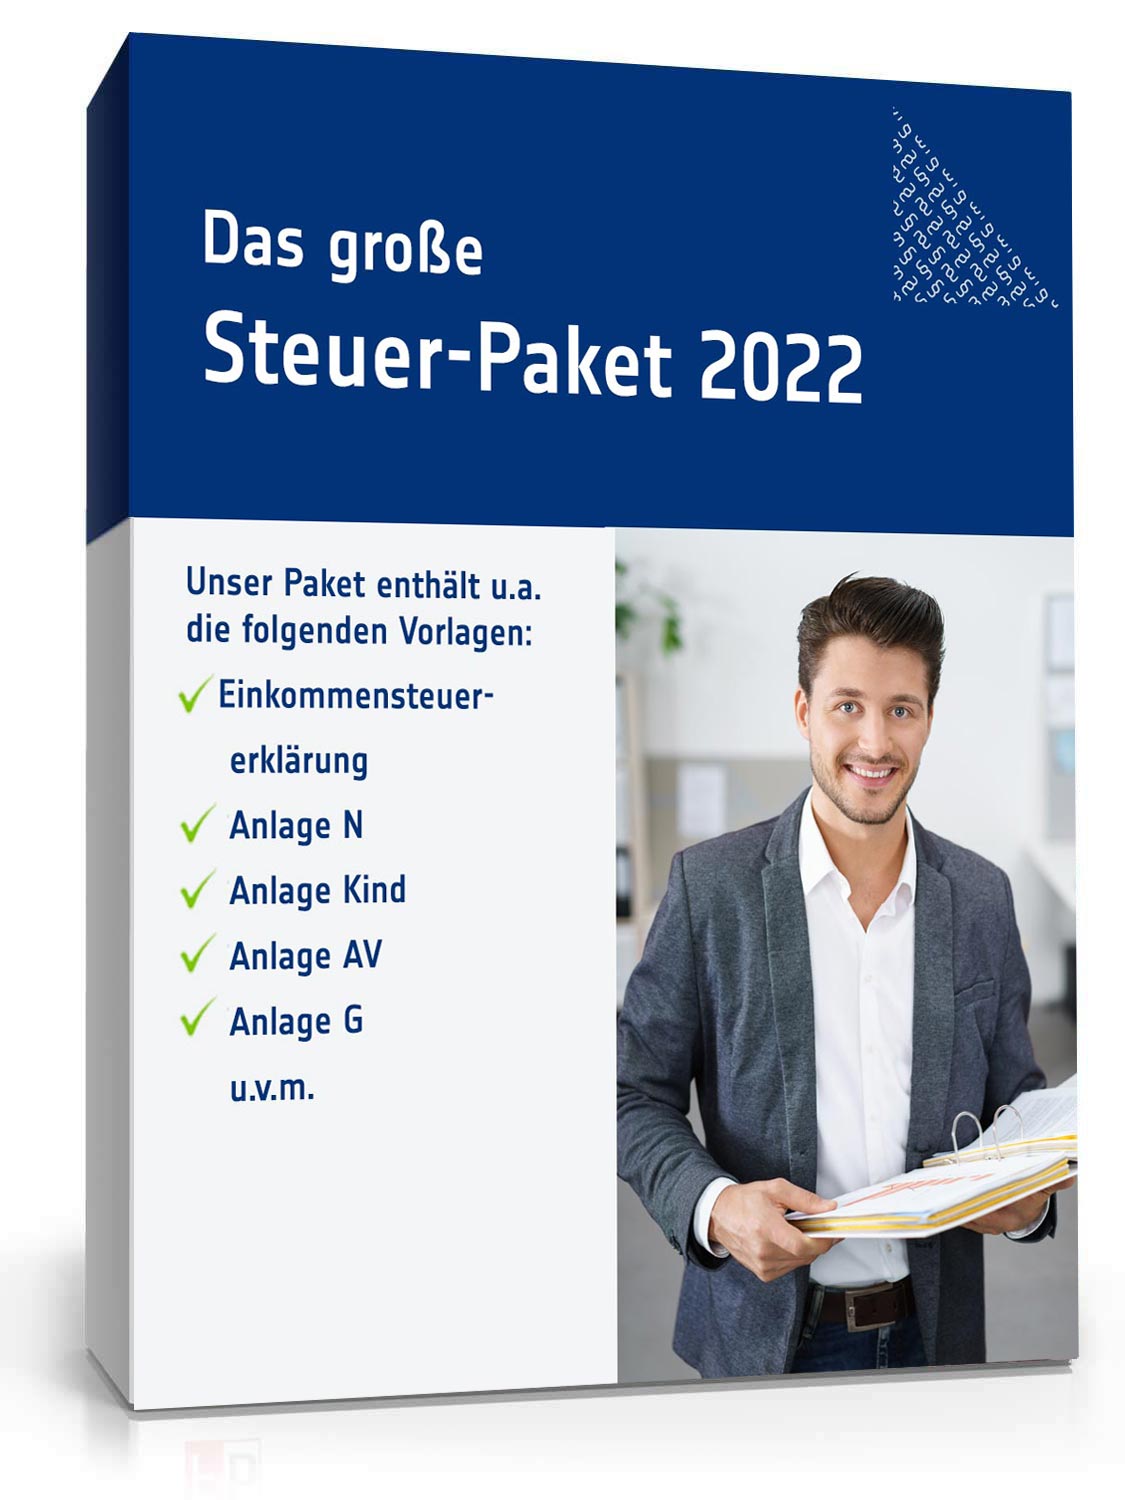 Hauptbild des Produkts: Das große Steuer-Paket 2022